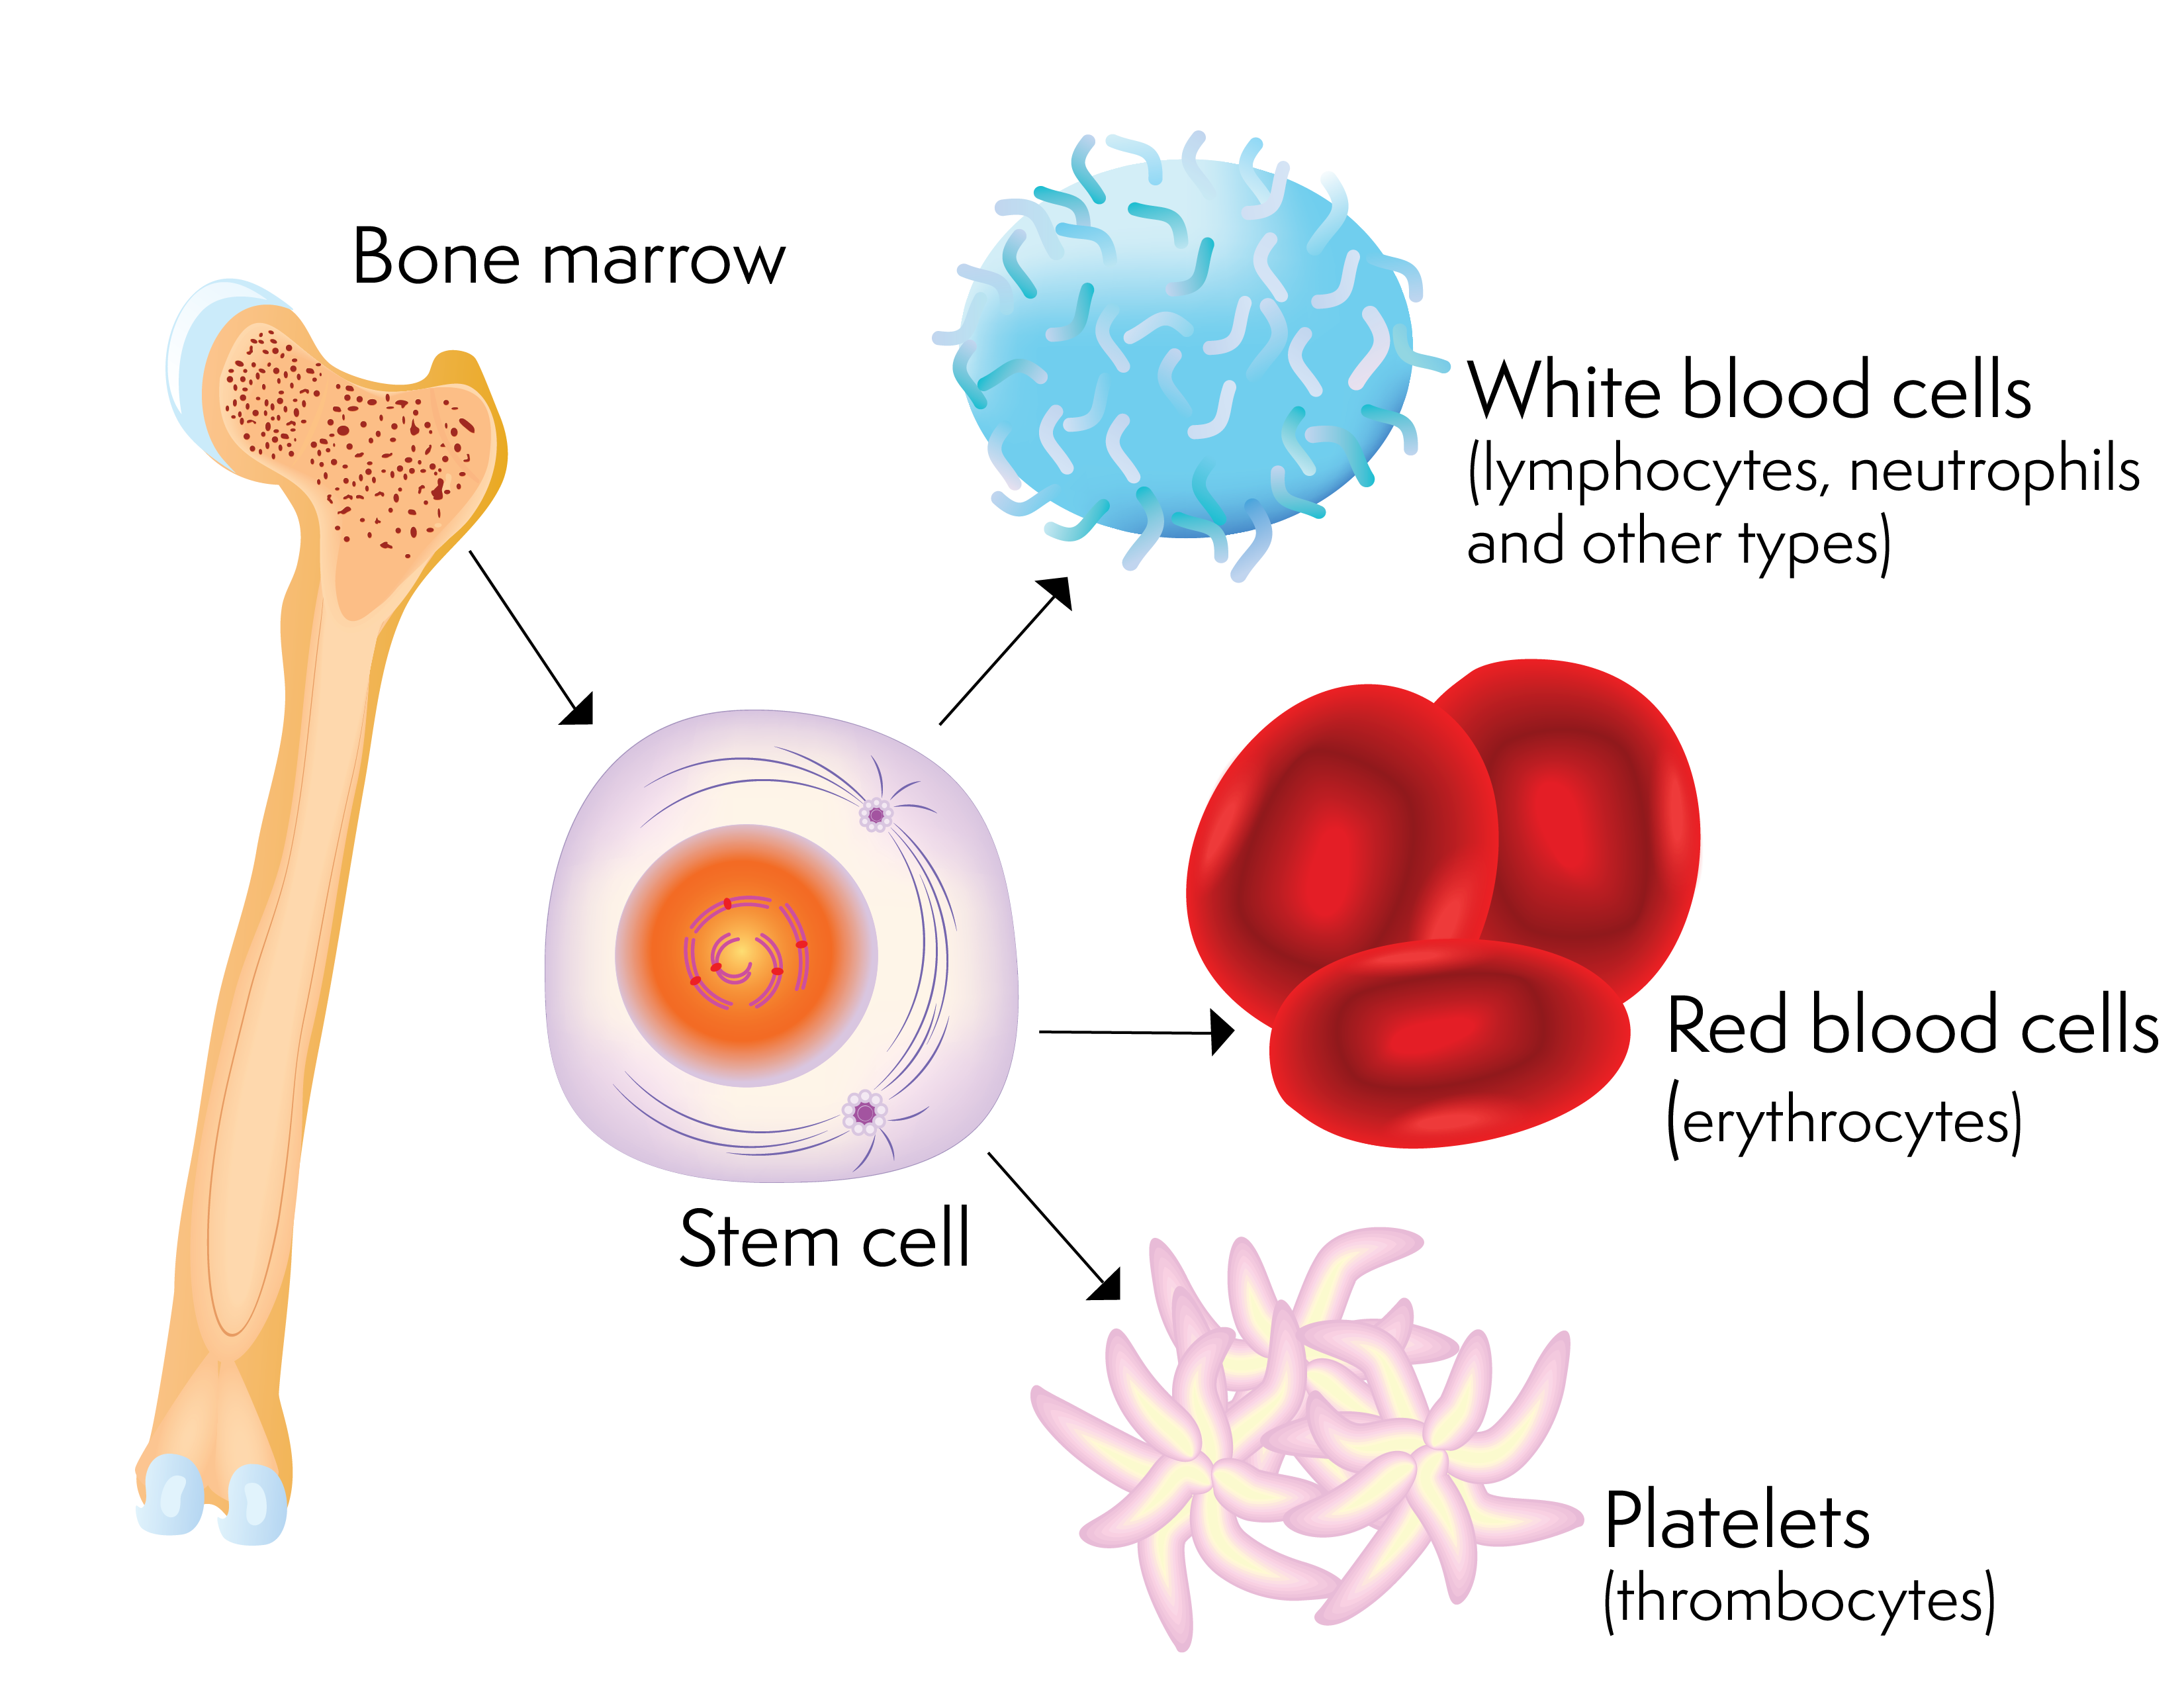 Una cellula staminale e le cellule del sangue che può produrre